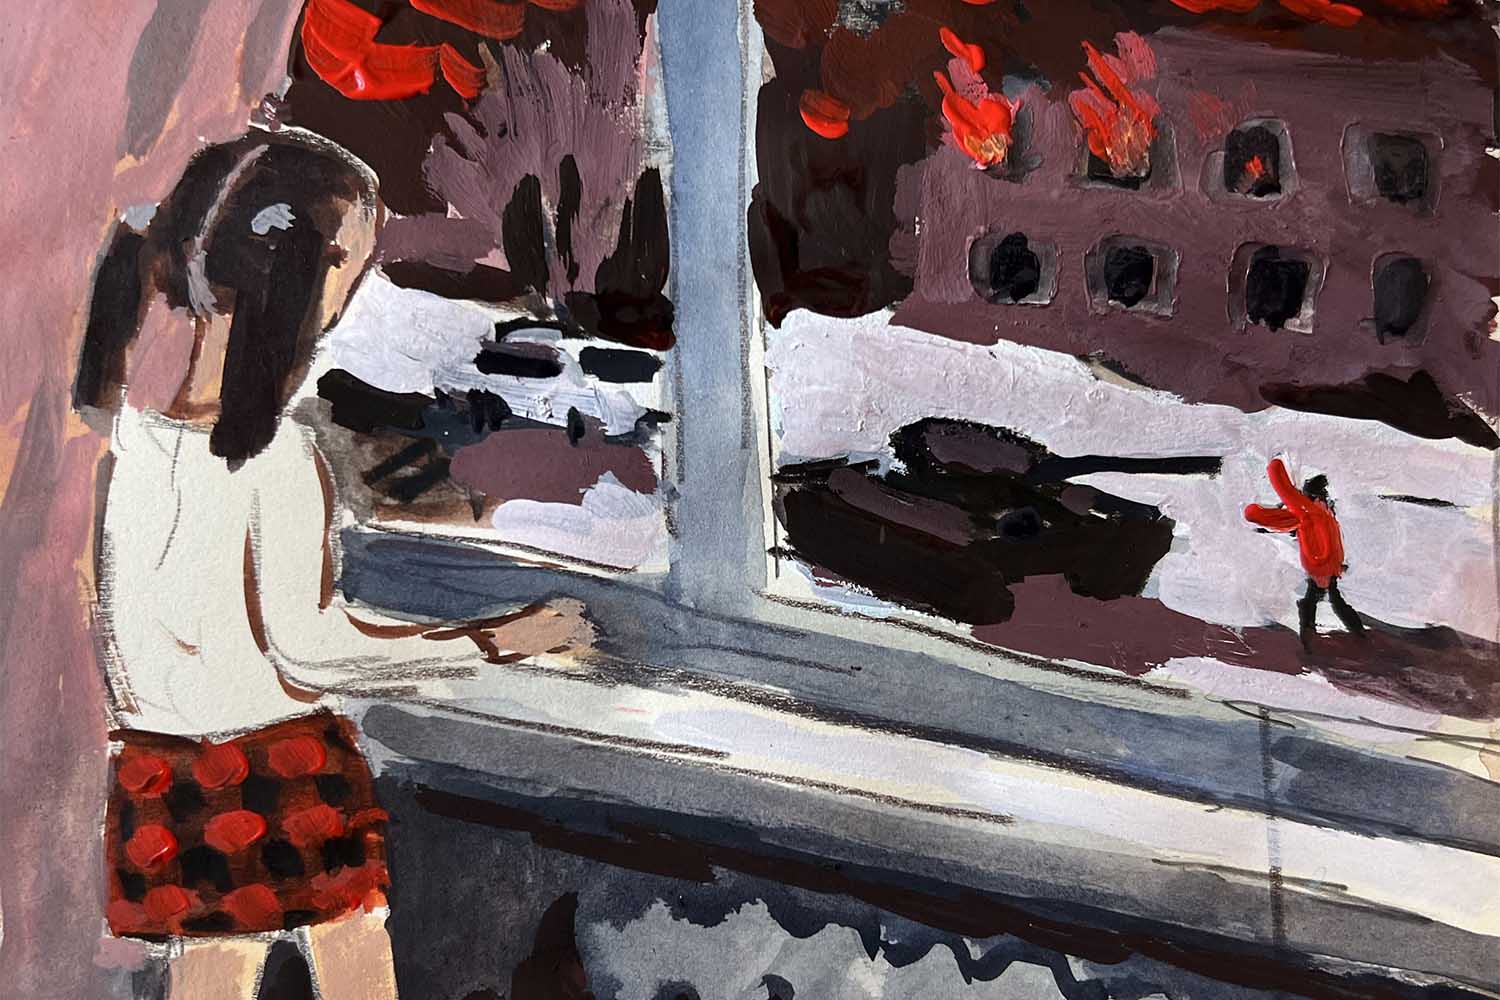 ציור של זויה צ'רקסקי מתוך הסדרה "ילדות סובייטית".